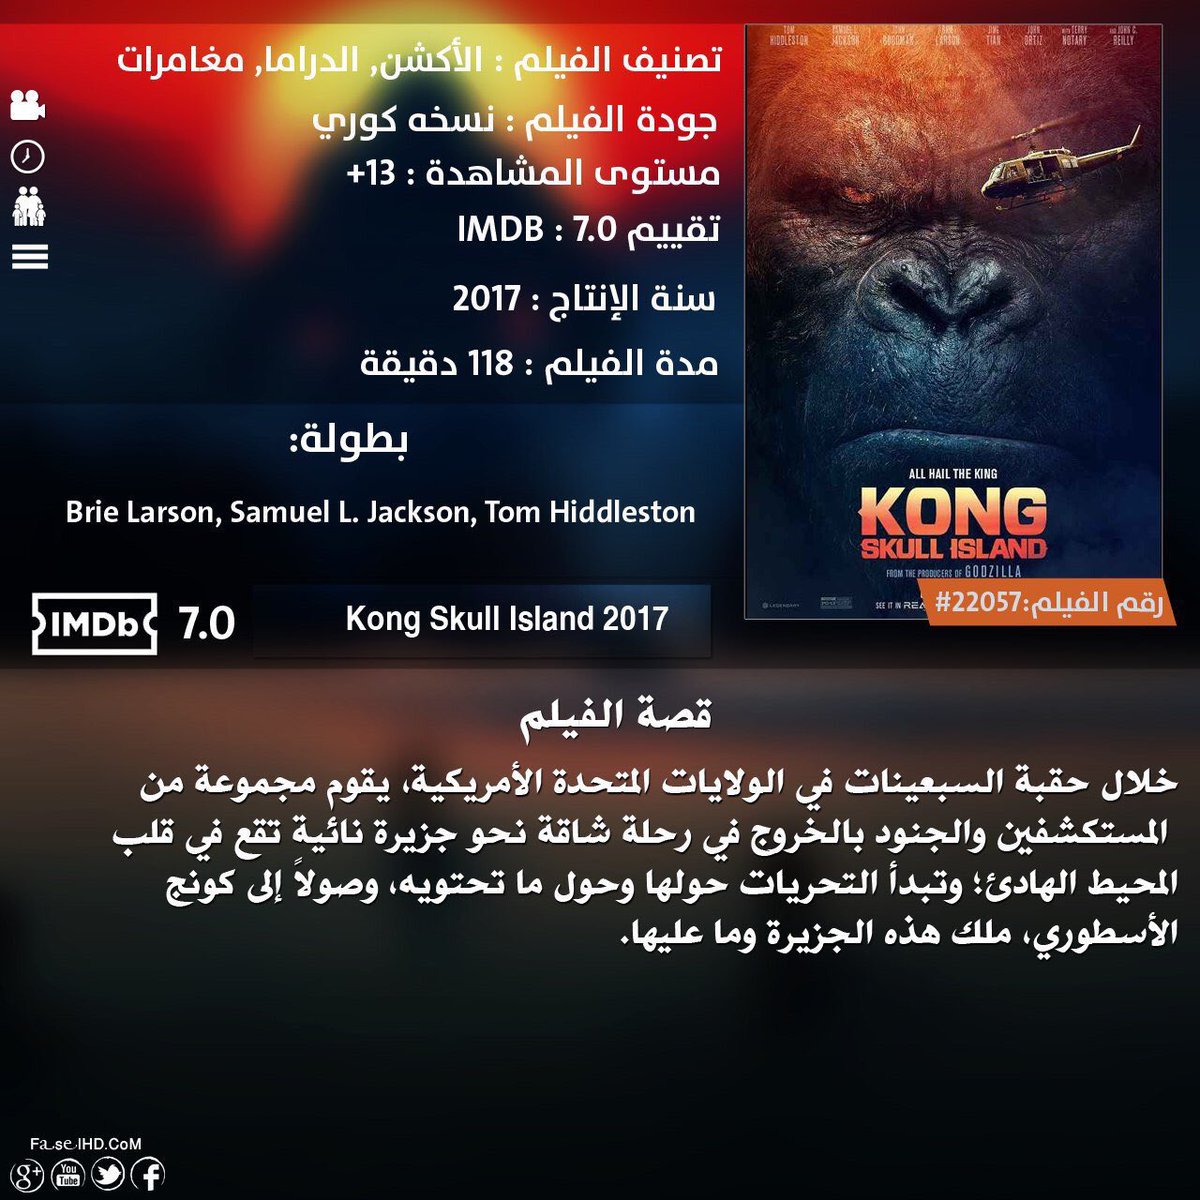 دكتور افلام On Twitter فلم Kong Skull Island 2017 مشاهدة Https